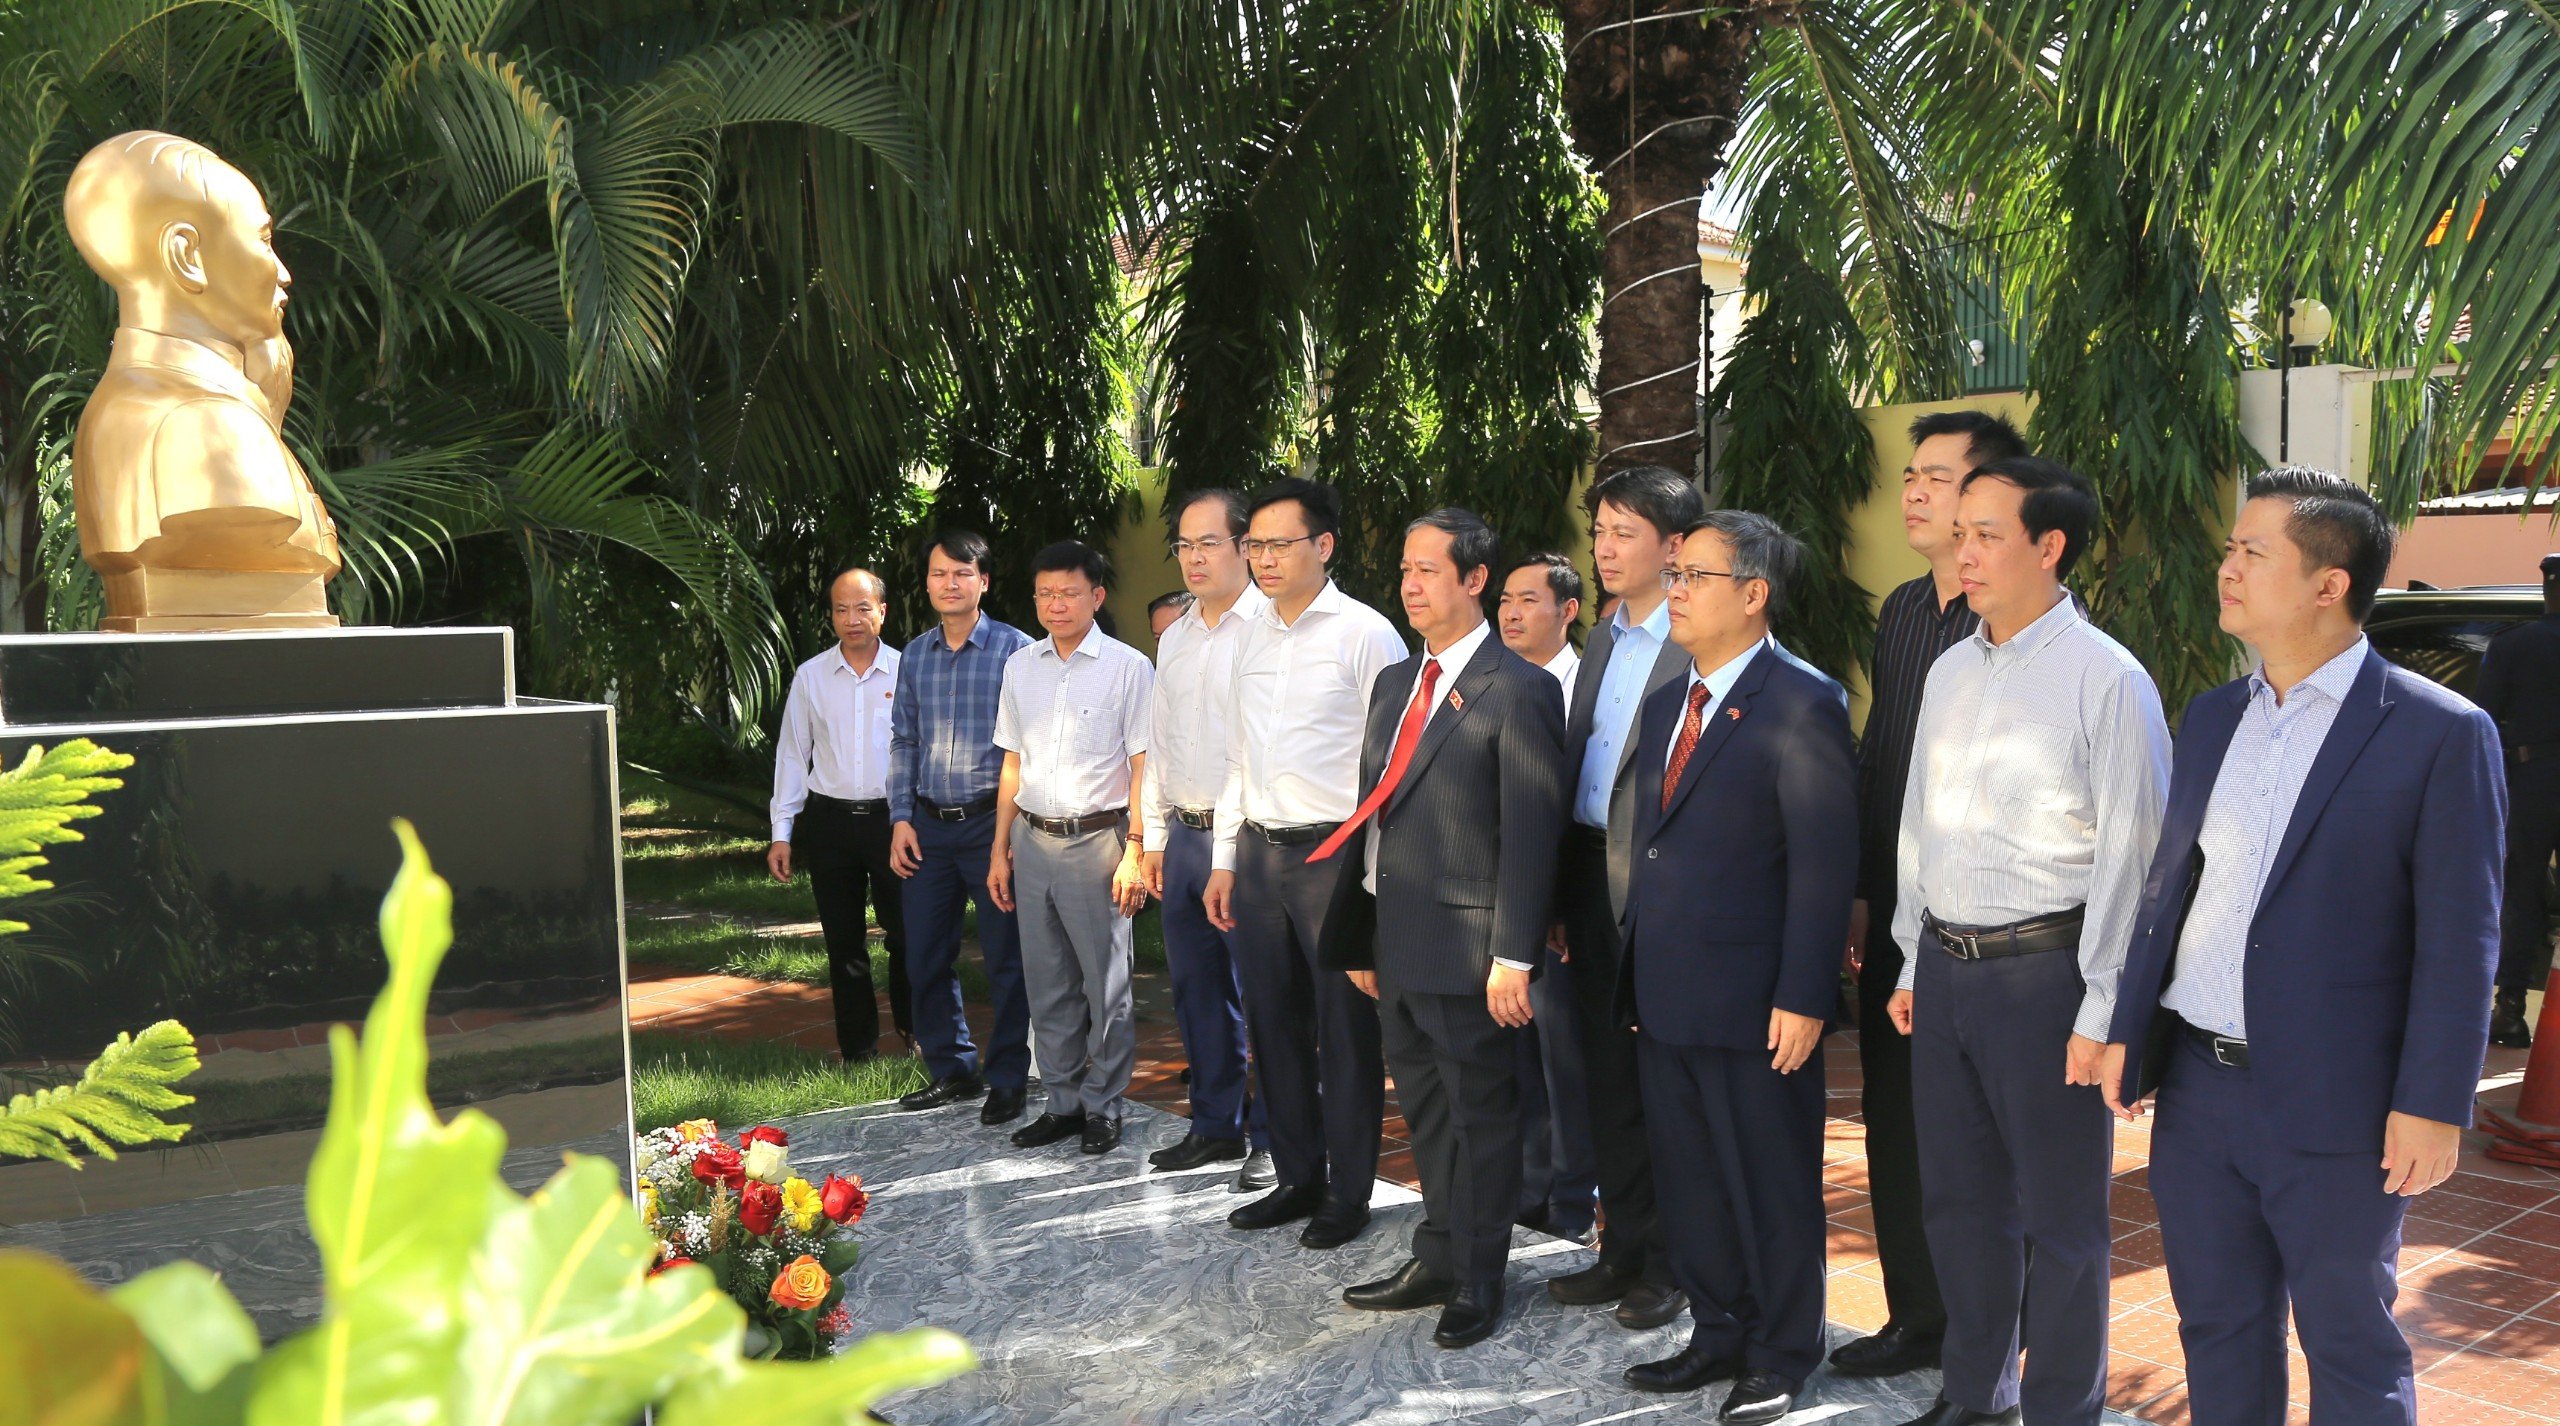 Bộ trưởng Nguyễn Kim Sơn và Đoàn công tác dâng hoa trước tượng đài Chủ tịch Hồ Chí Minh trong khuôn viên Đại sứ quán Việt Nam tại Angola.